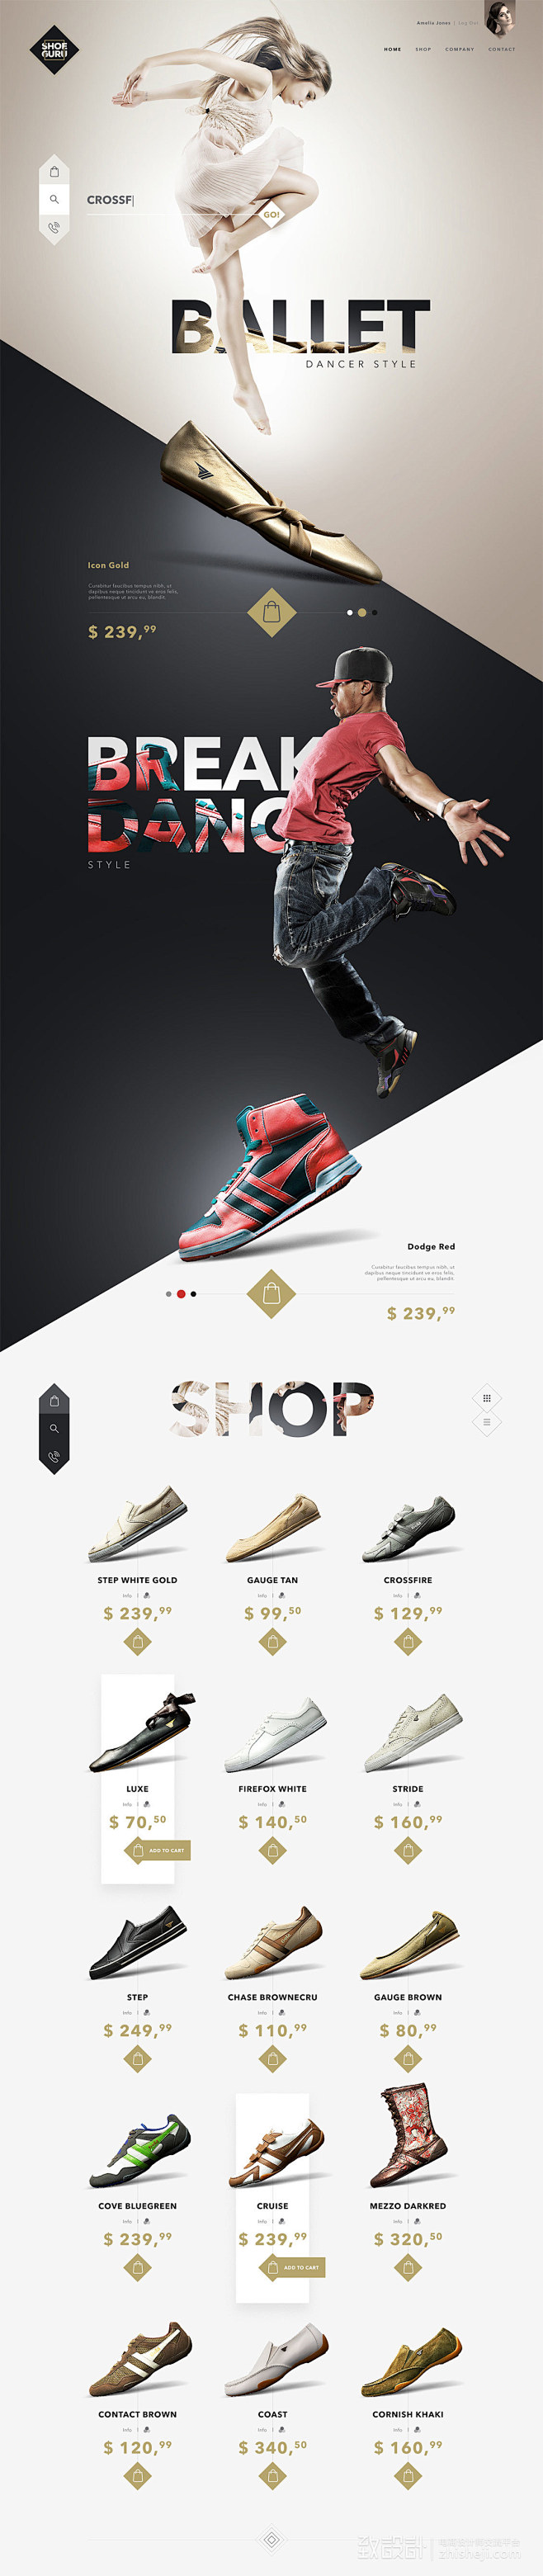 SHOE GURU鞋子商店网站设计